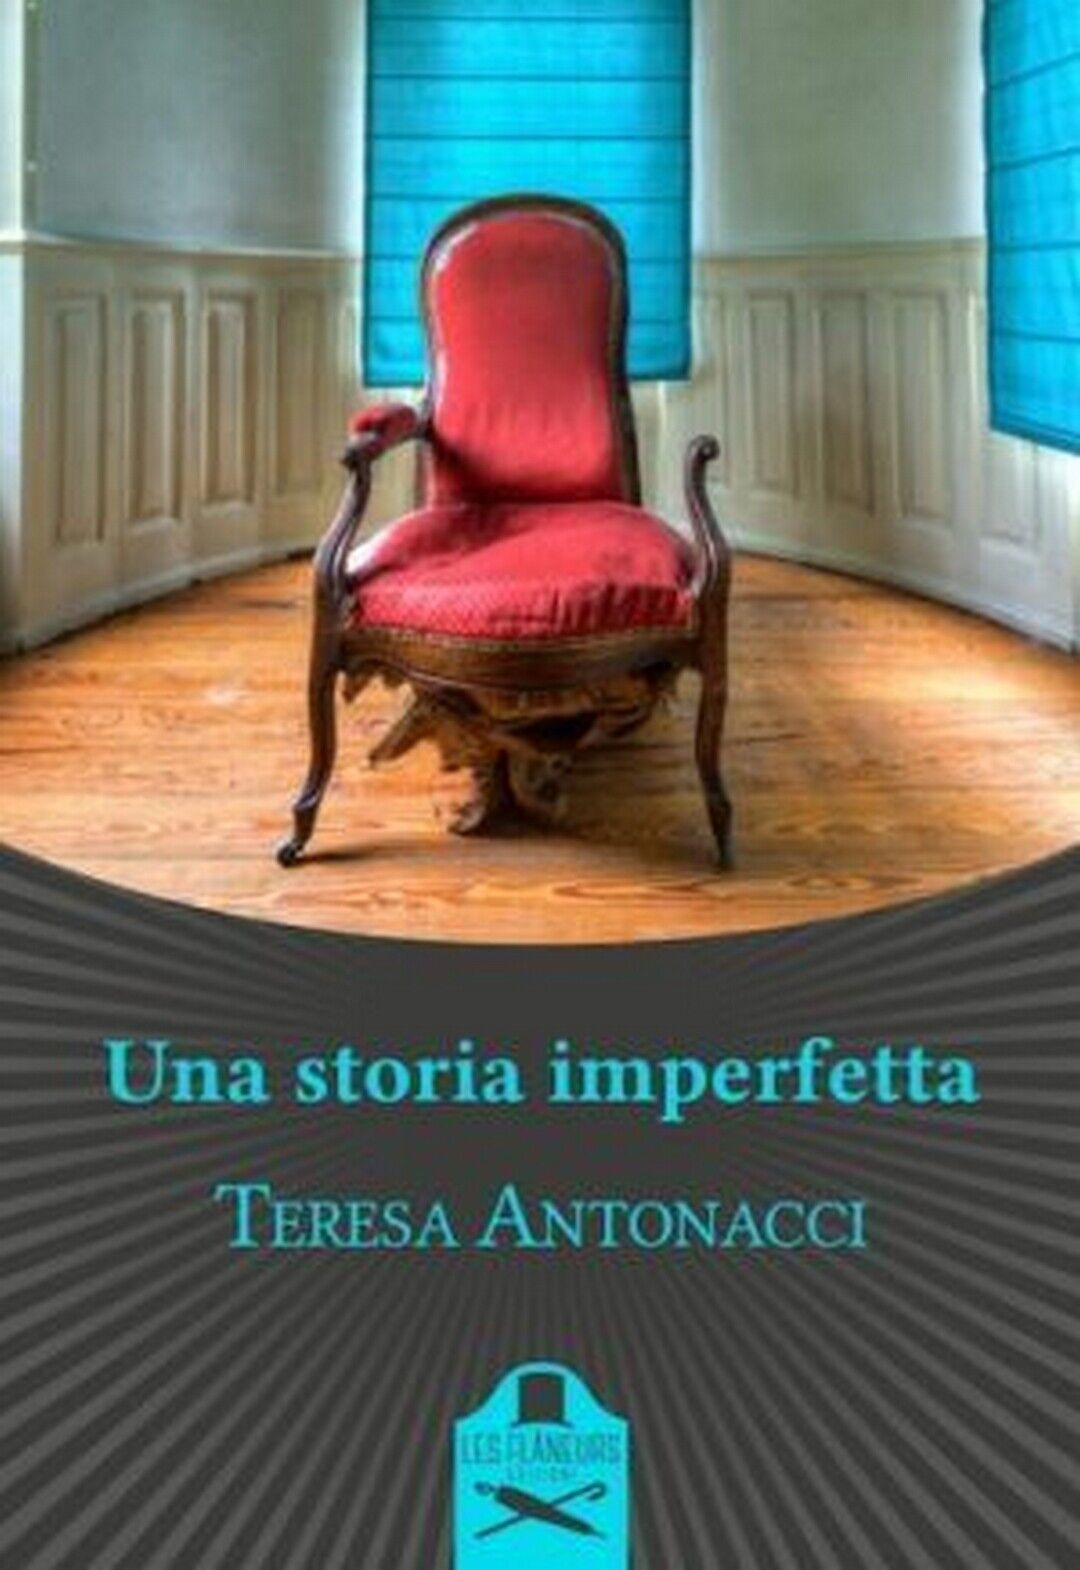 Una storia imperfetta  di Teresa Antonacci ,  Flaneurs libro usato